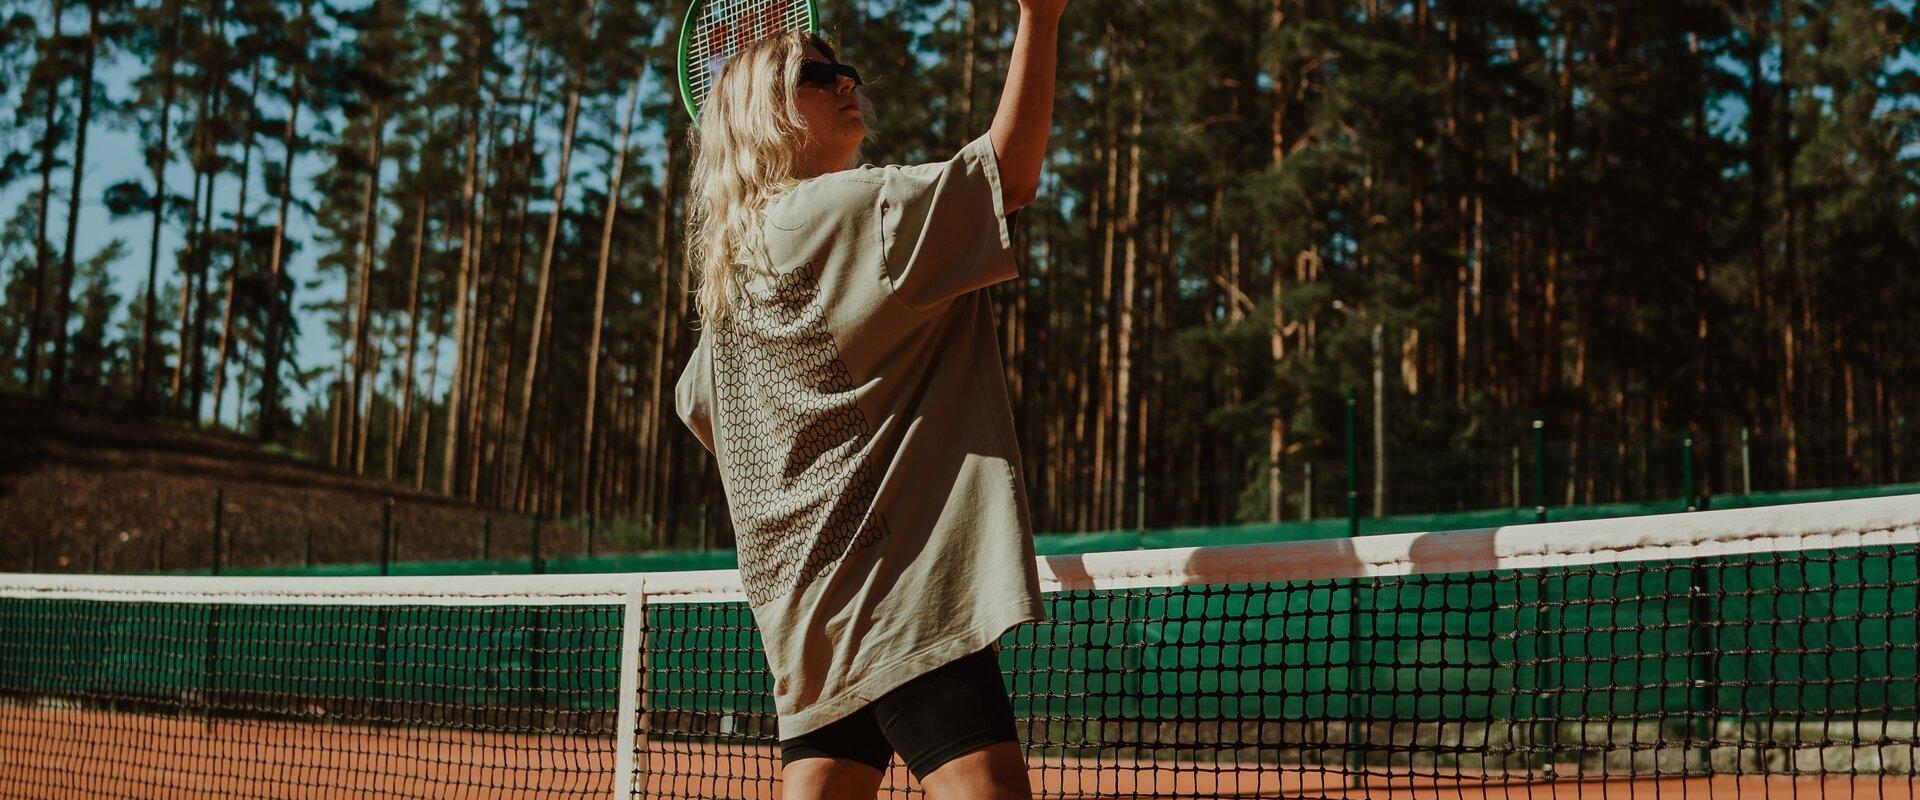 Tennis 8_Fotol Irina Oleinik_Autor Teele Mustallikas